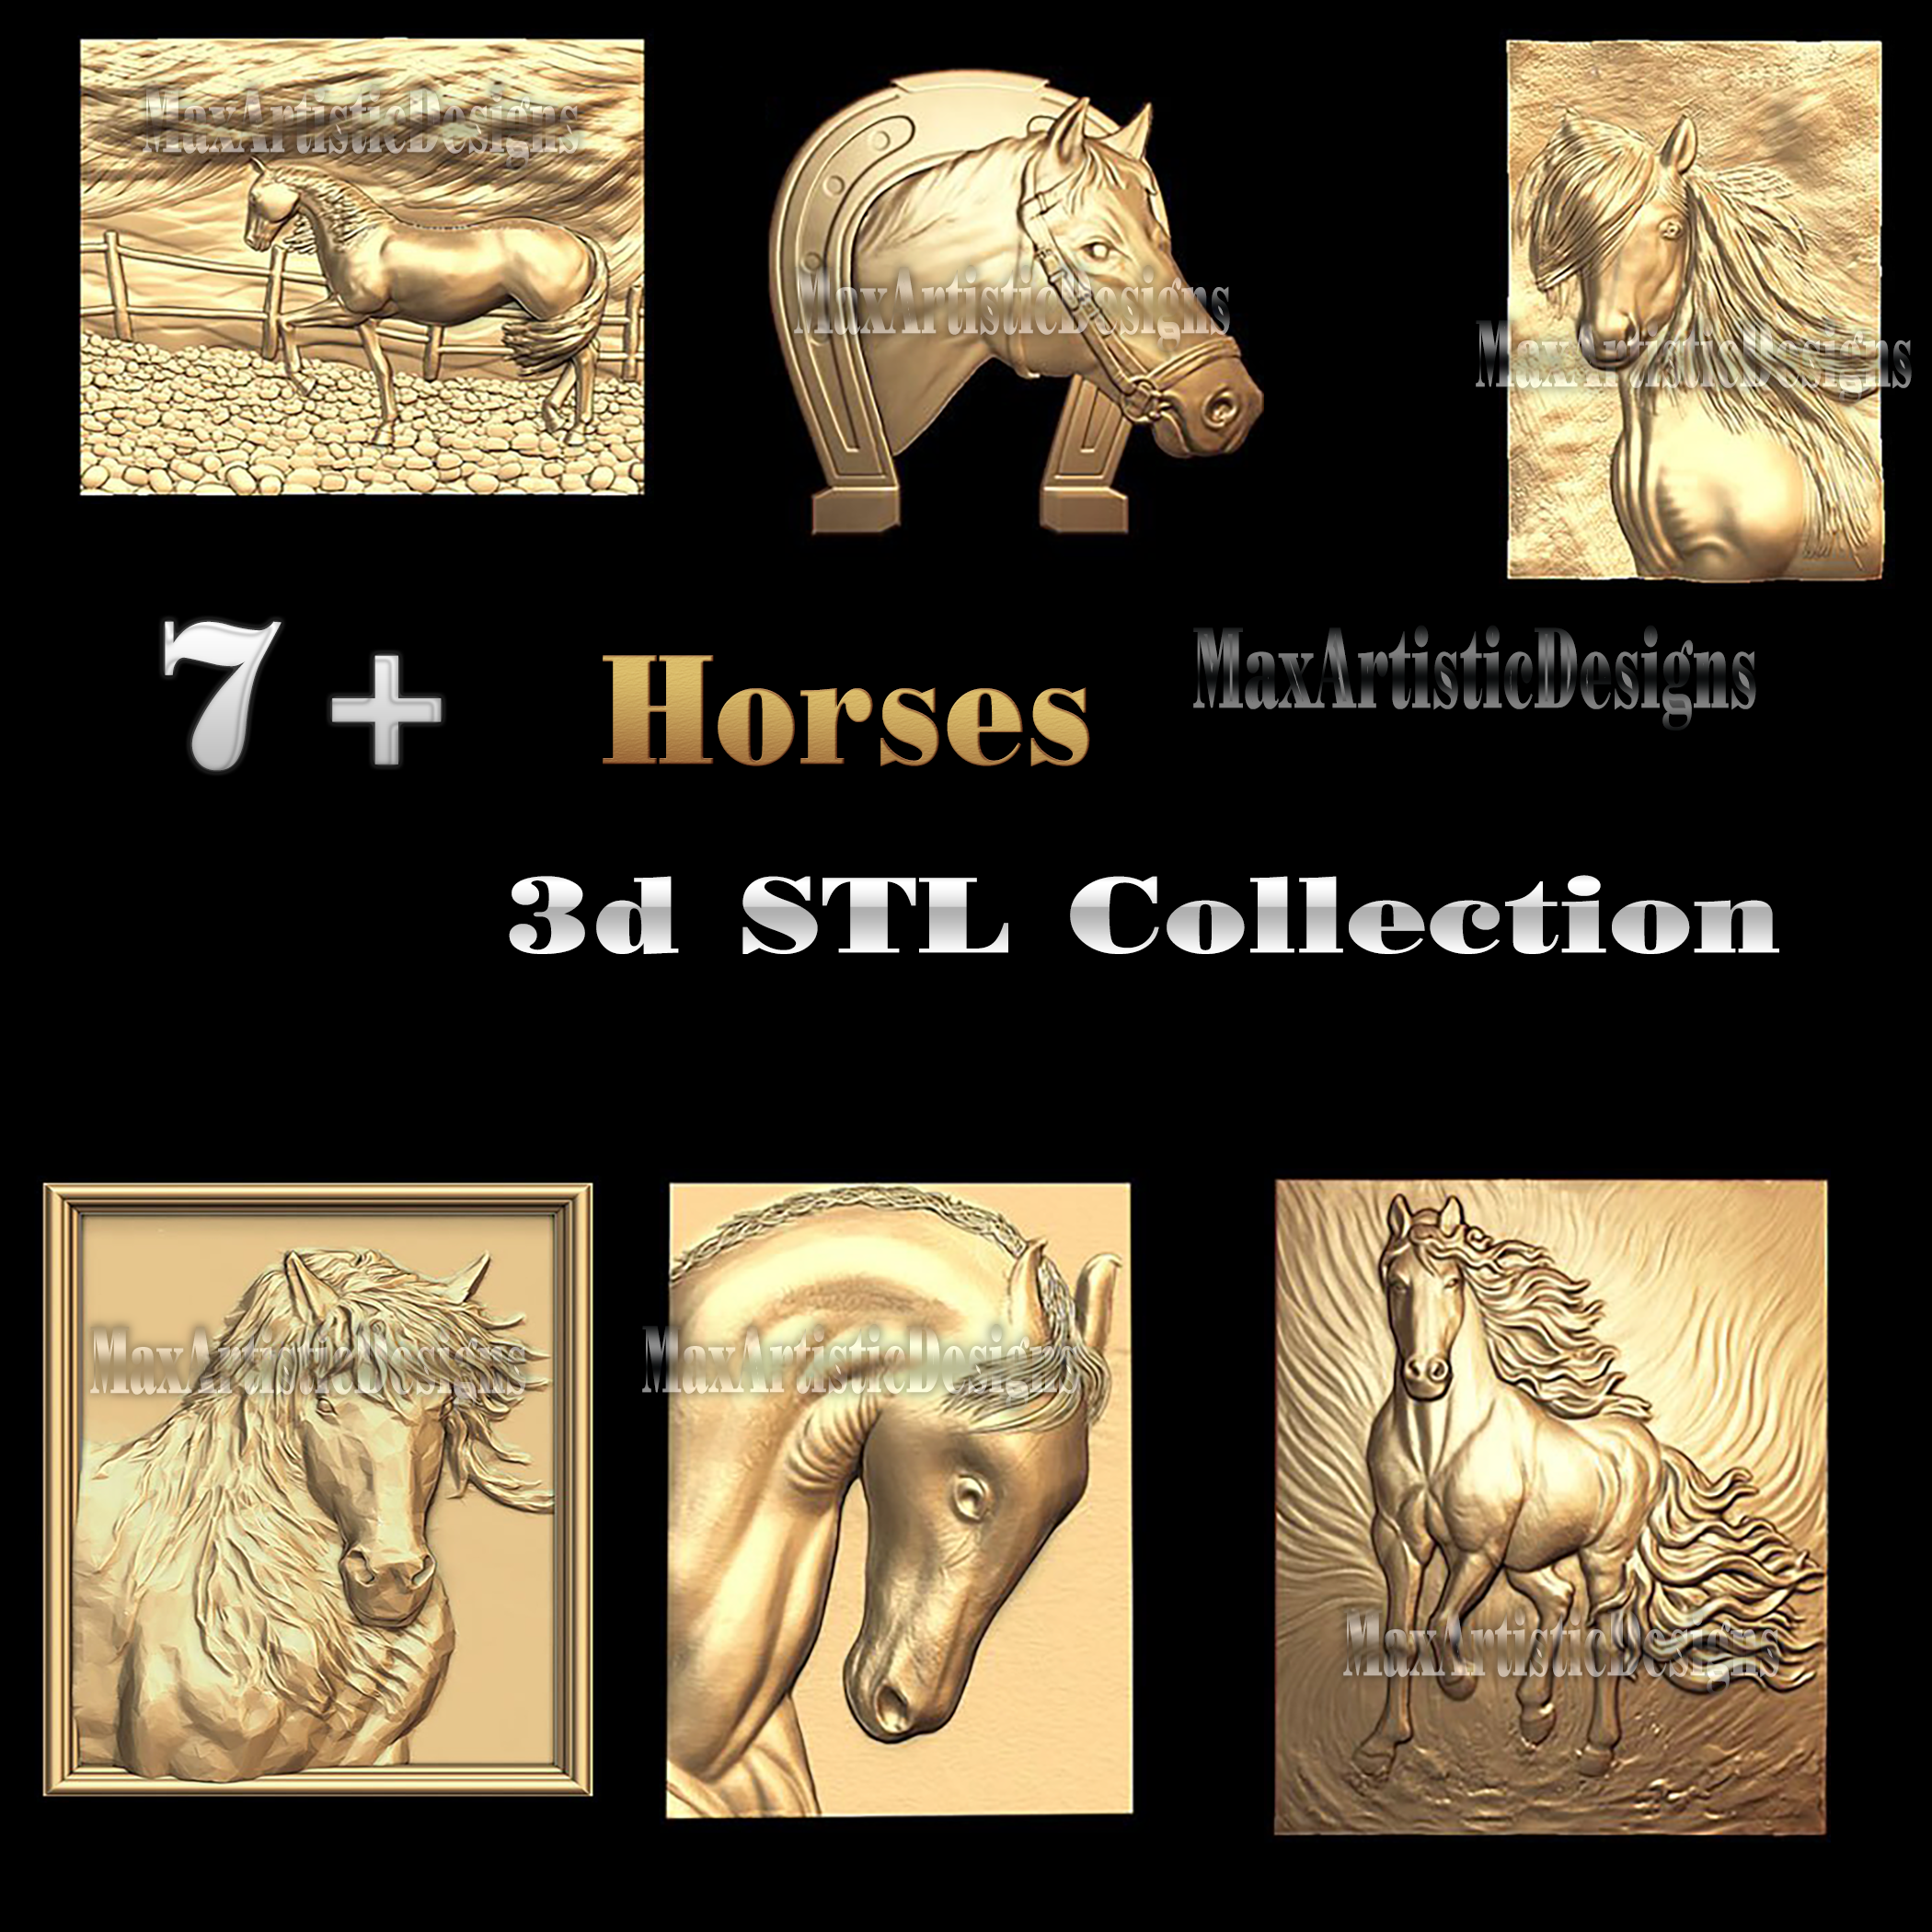 8+ modelli di cavalli stl bassorilievo in legno file stl 3d per router cnc stampante 3d artcam aspire download digitale